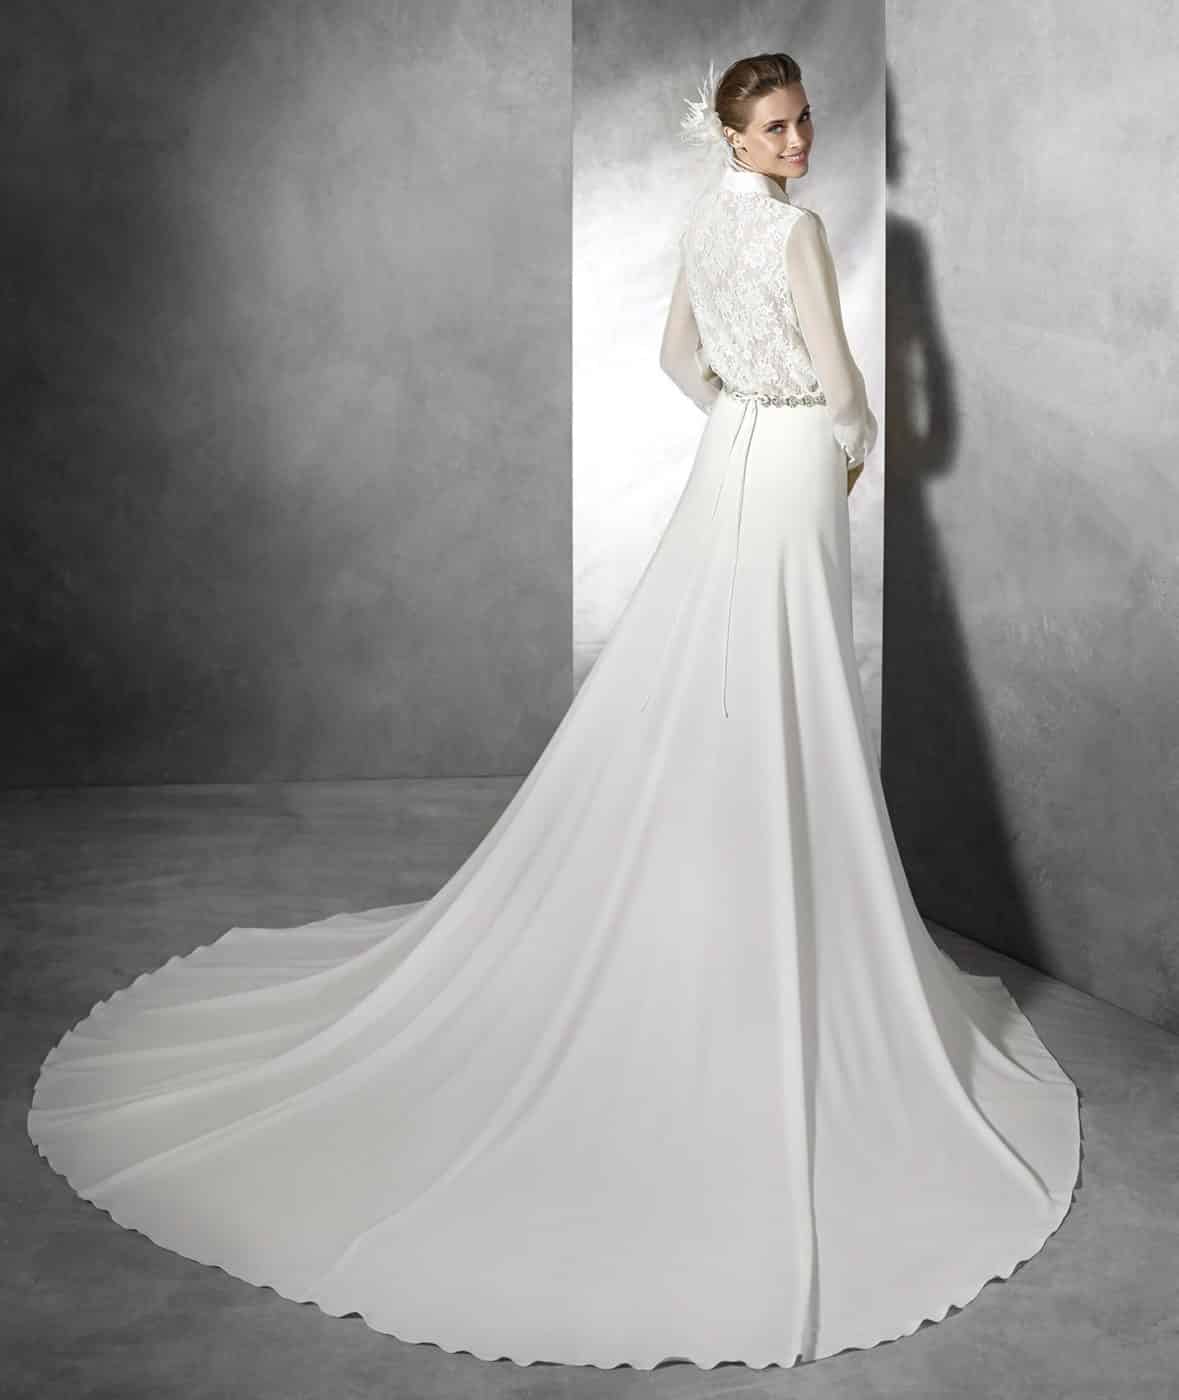 Guía de telas para vestidos de novia: Crepé - Lluvia de arroz